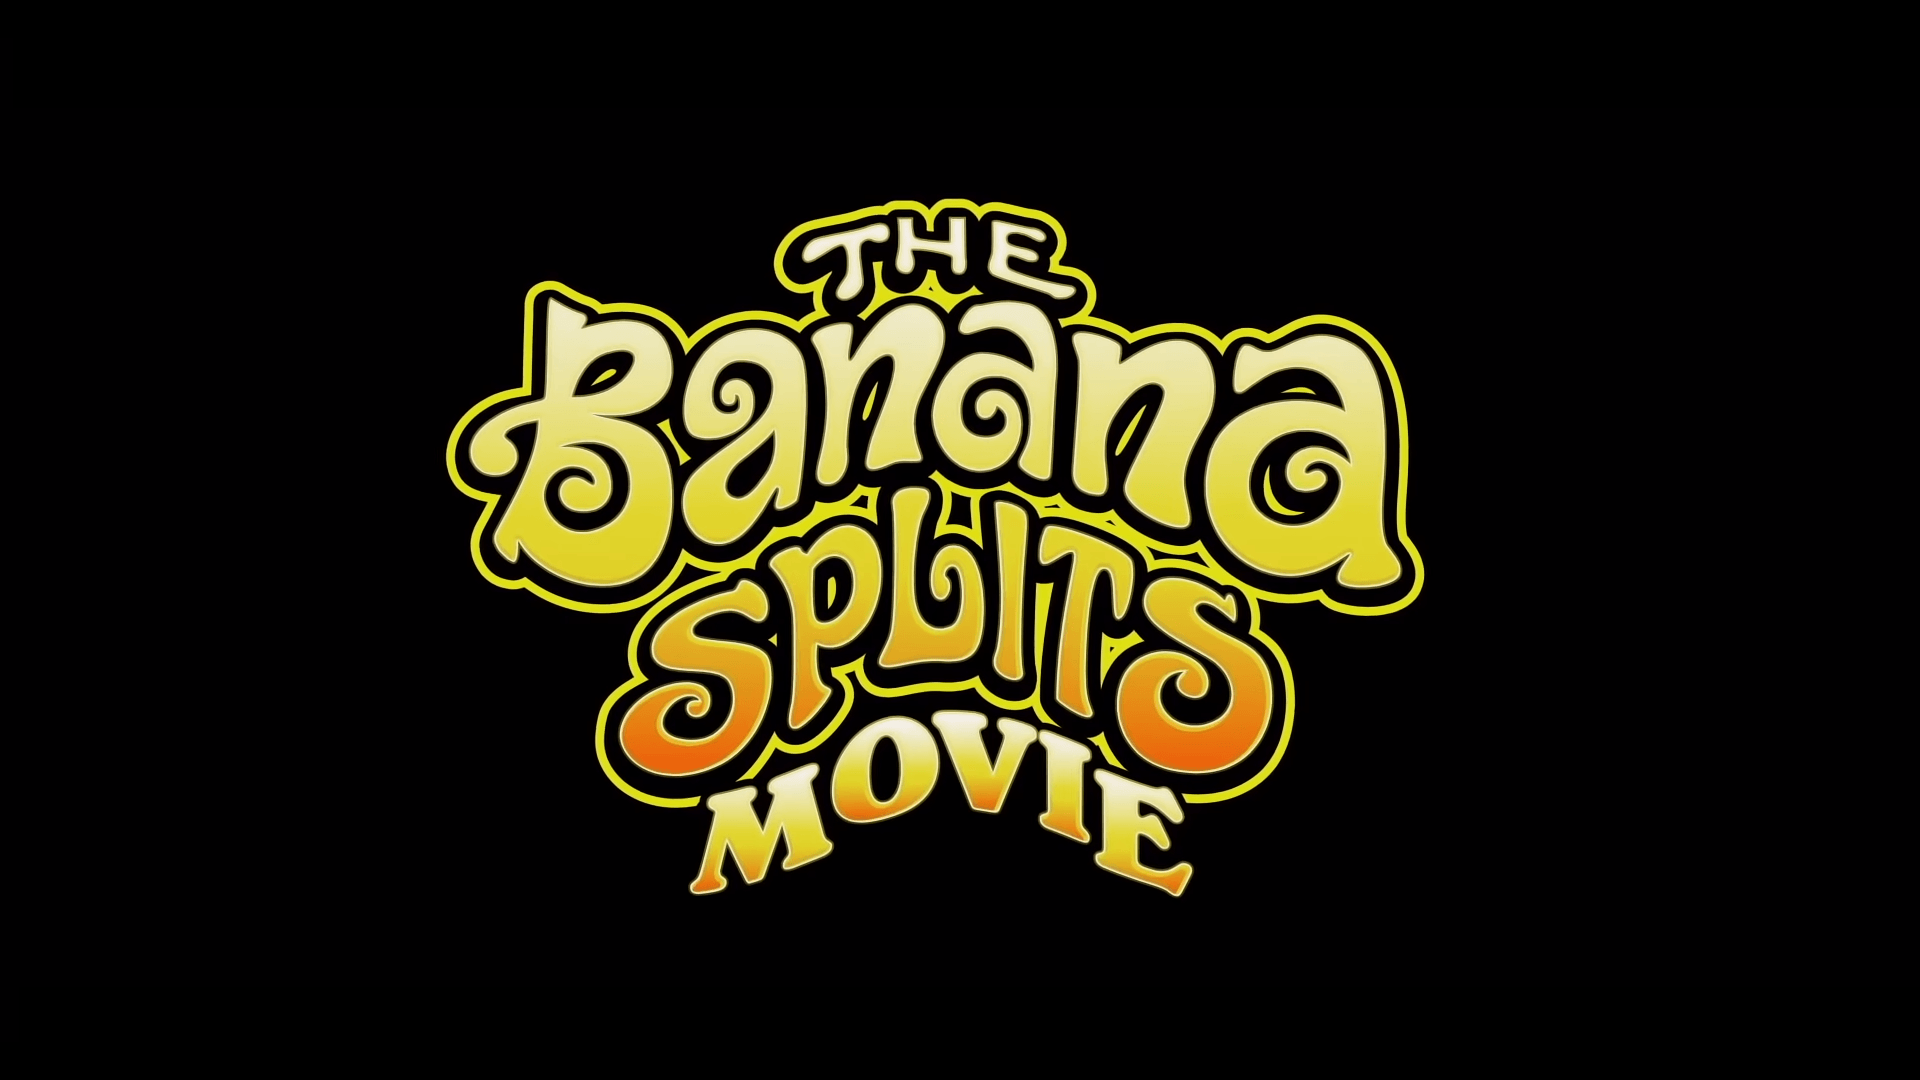 Movie Review: The Banana Splits Movie (2019)